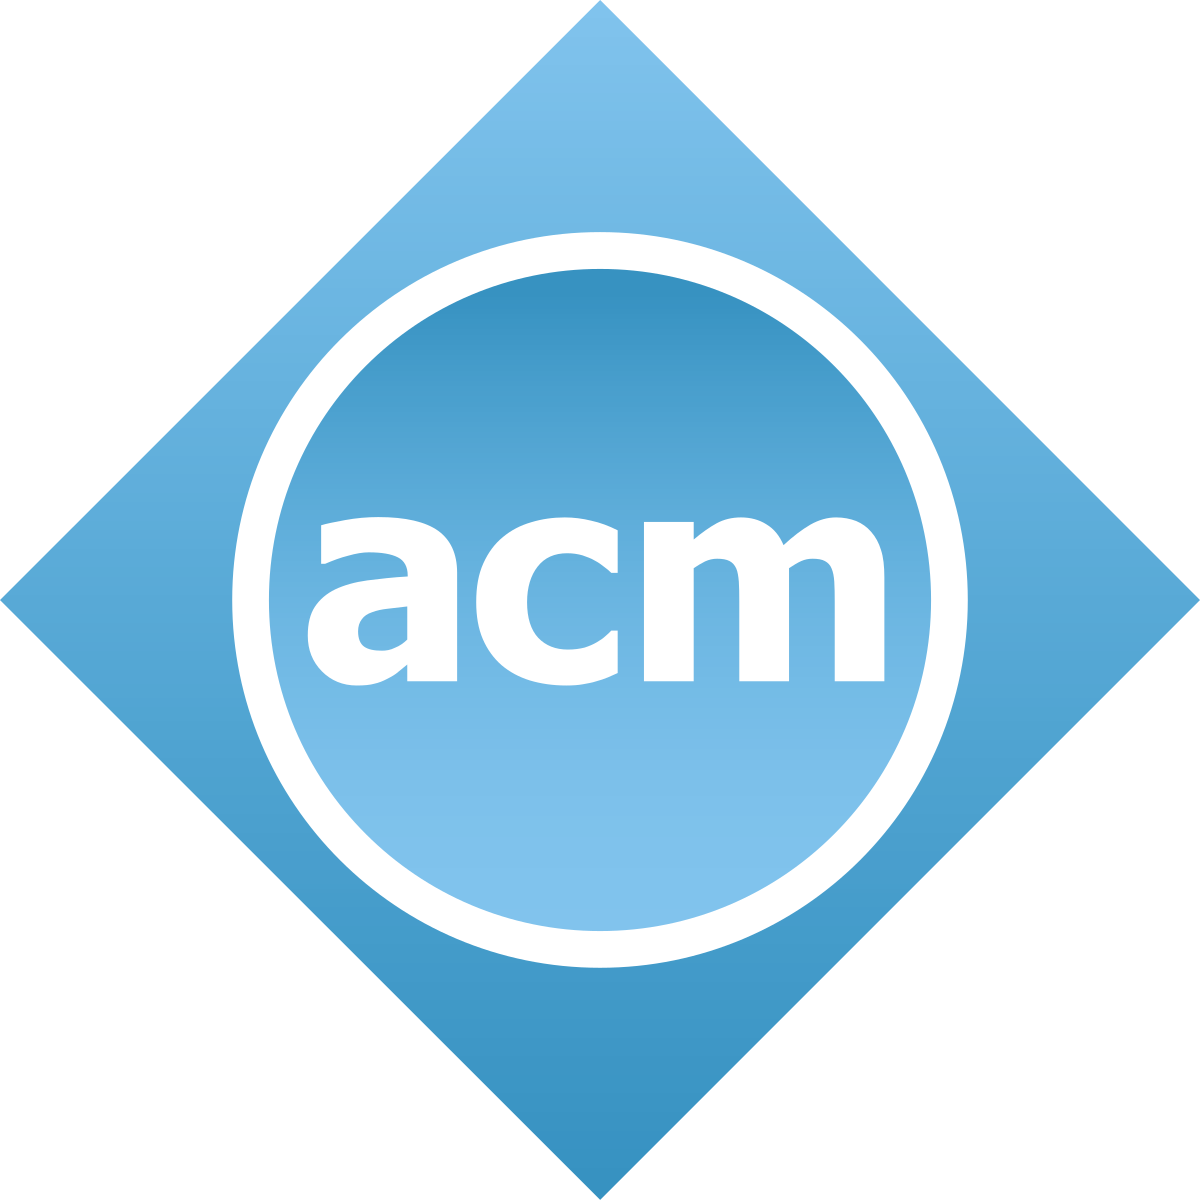 ACM_logo